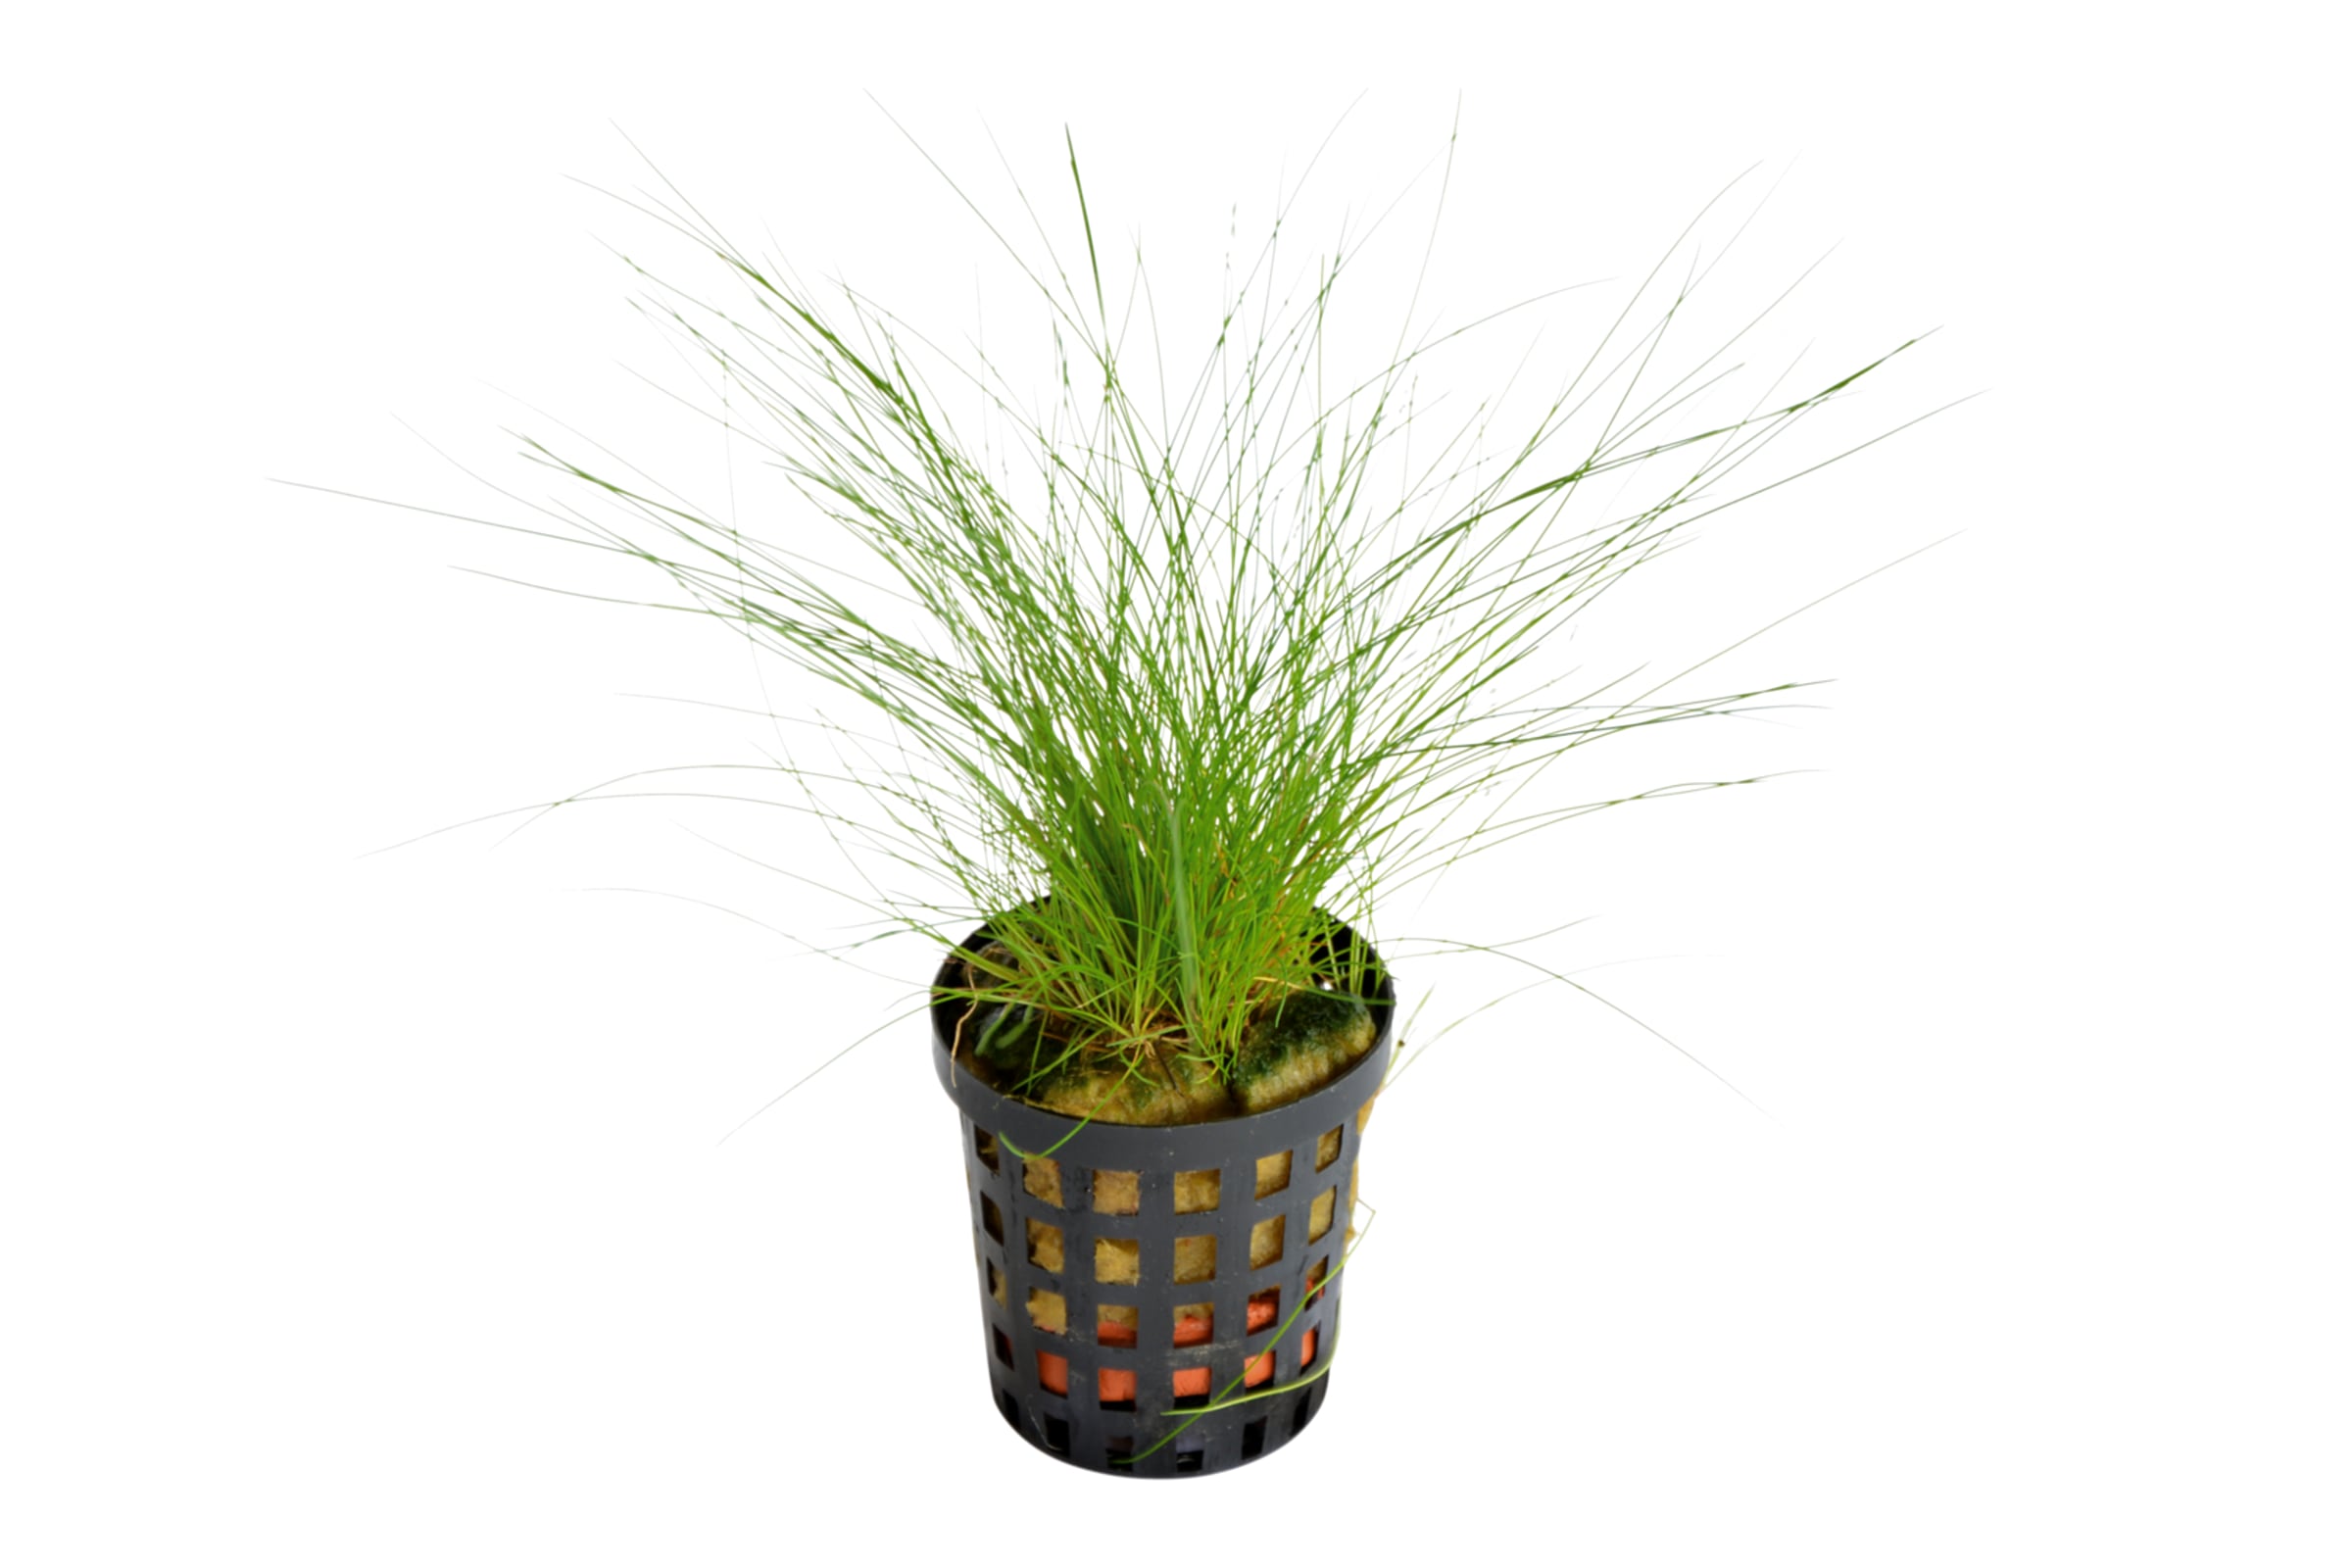 How to trim Eleocharis acicularis (hair grass)